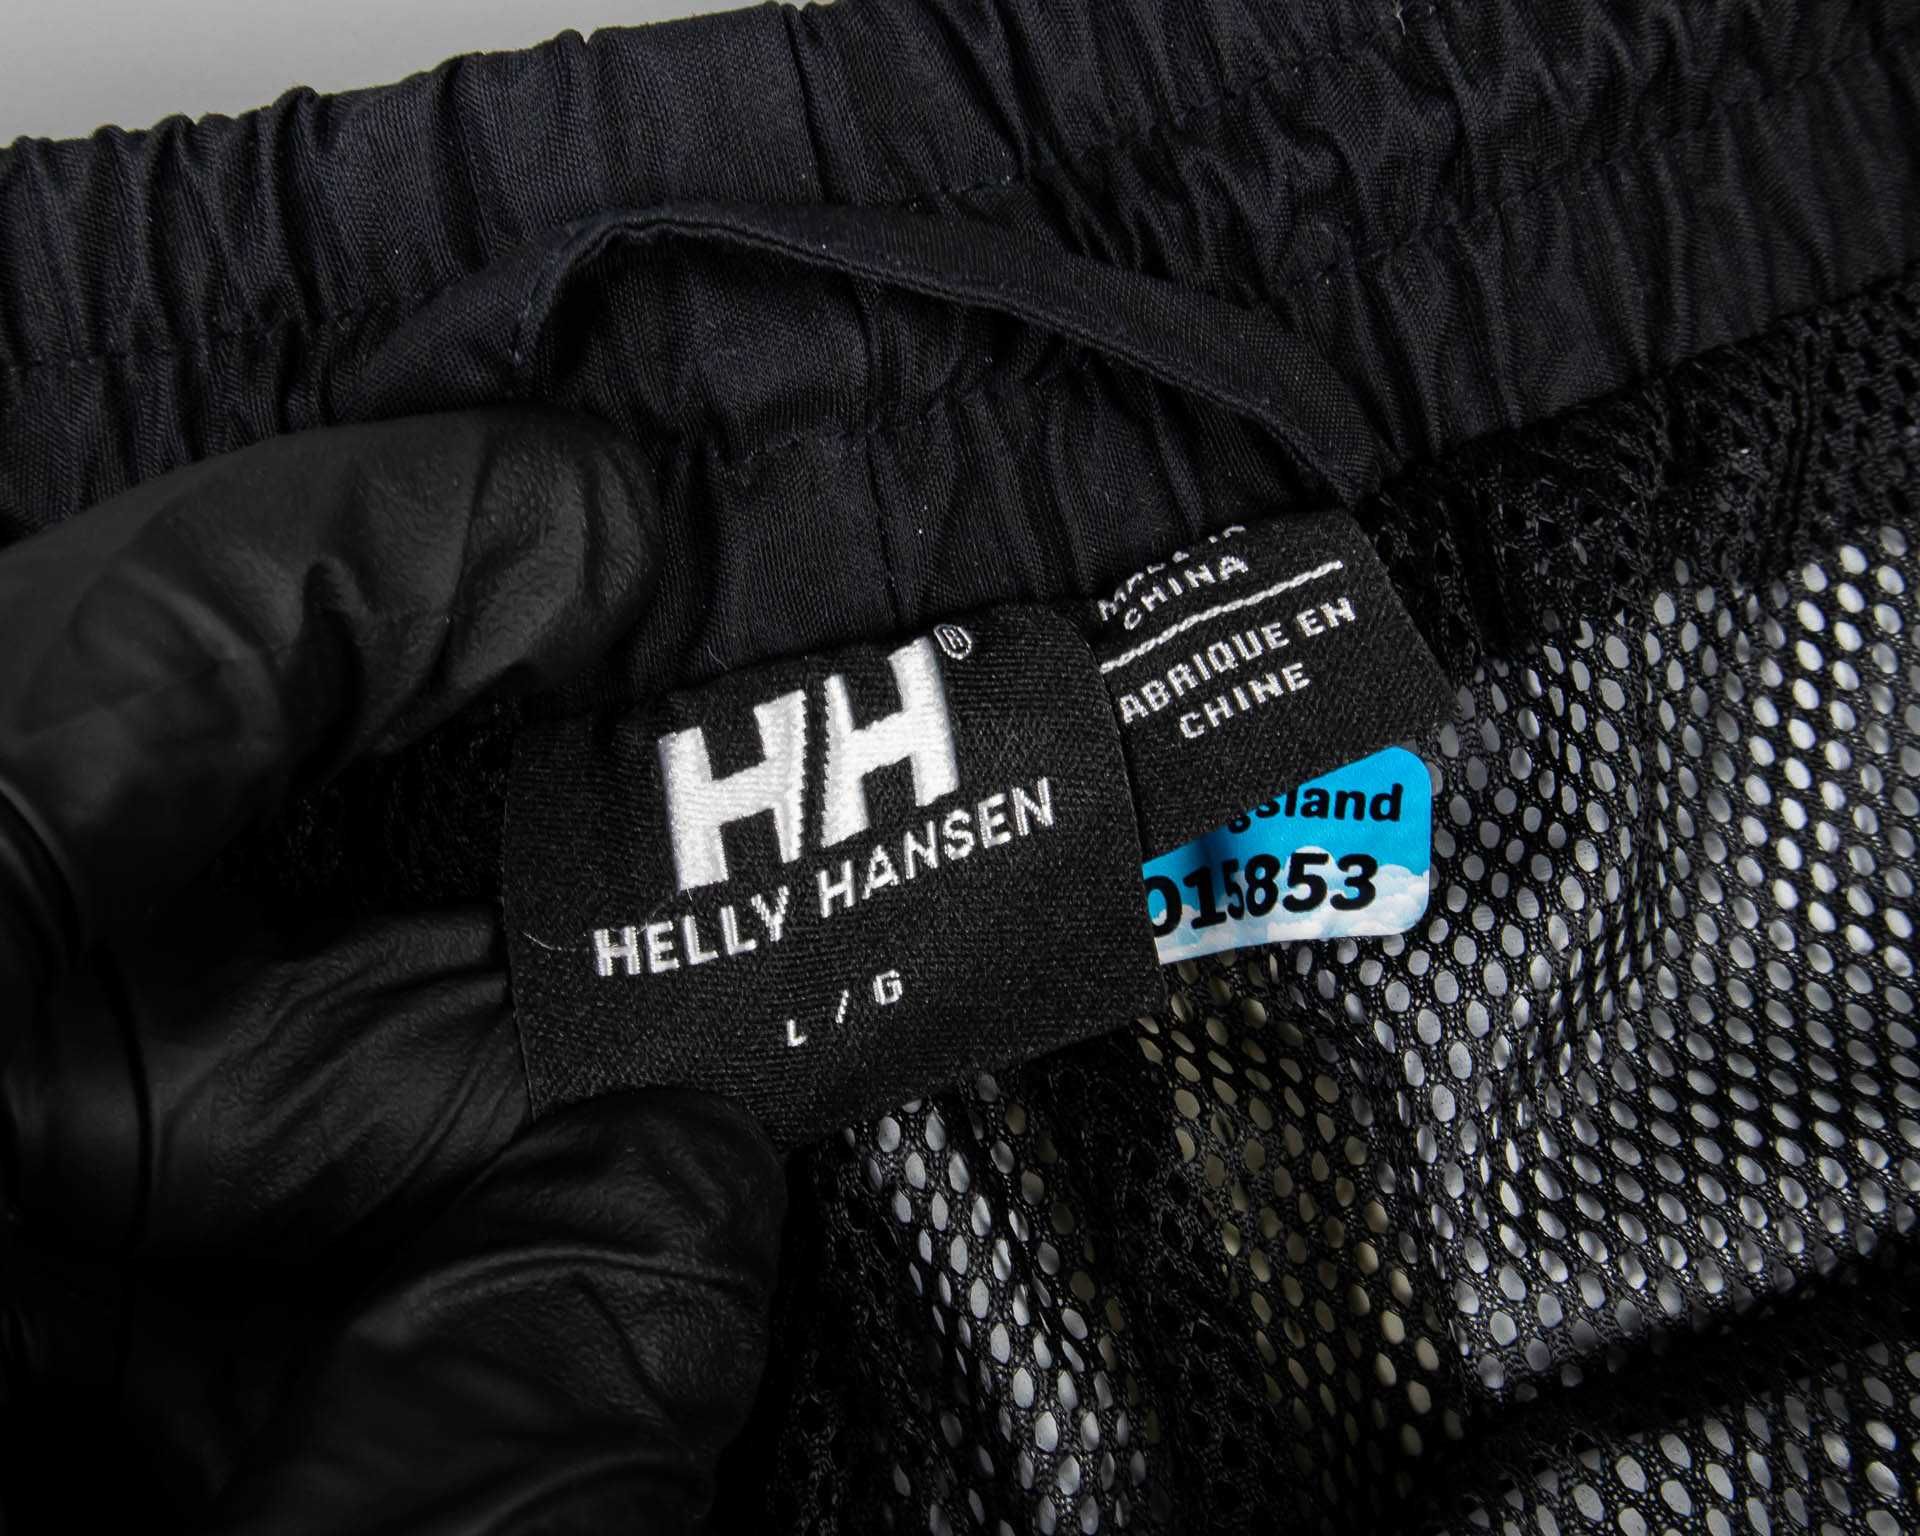 Туристические непромокаемые штаны на мембране Helly Hansen.Размер L-XL